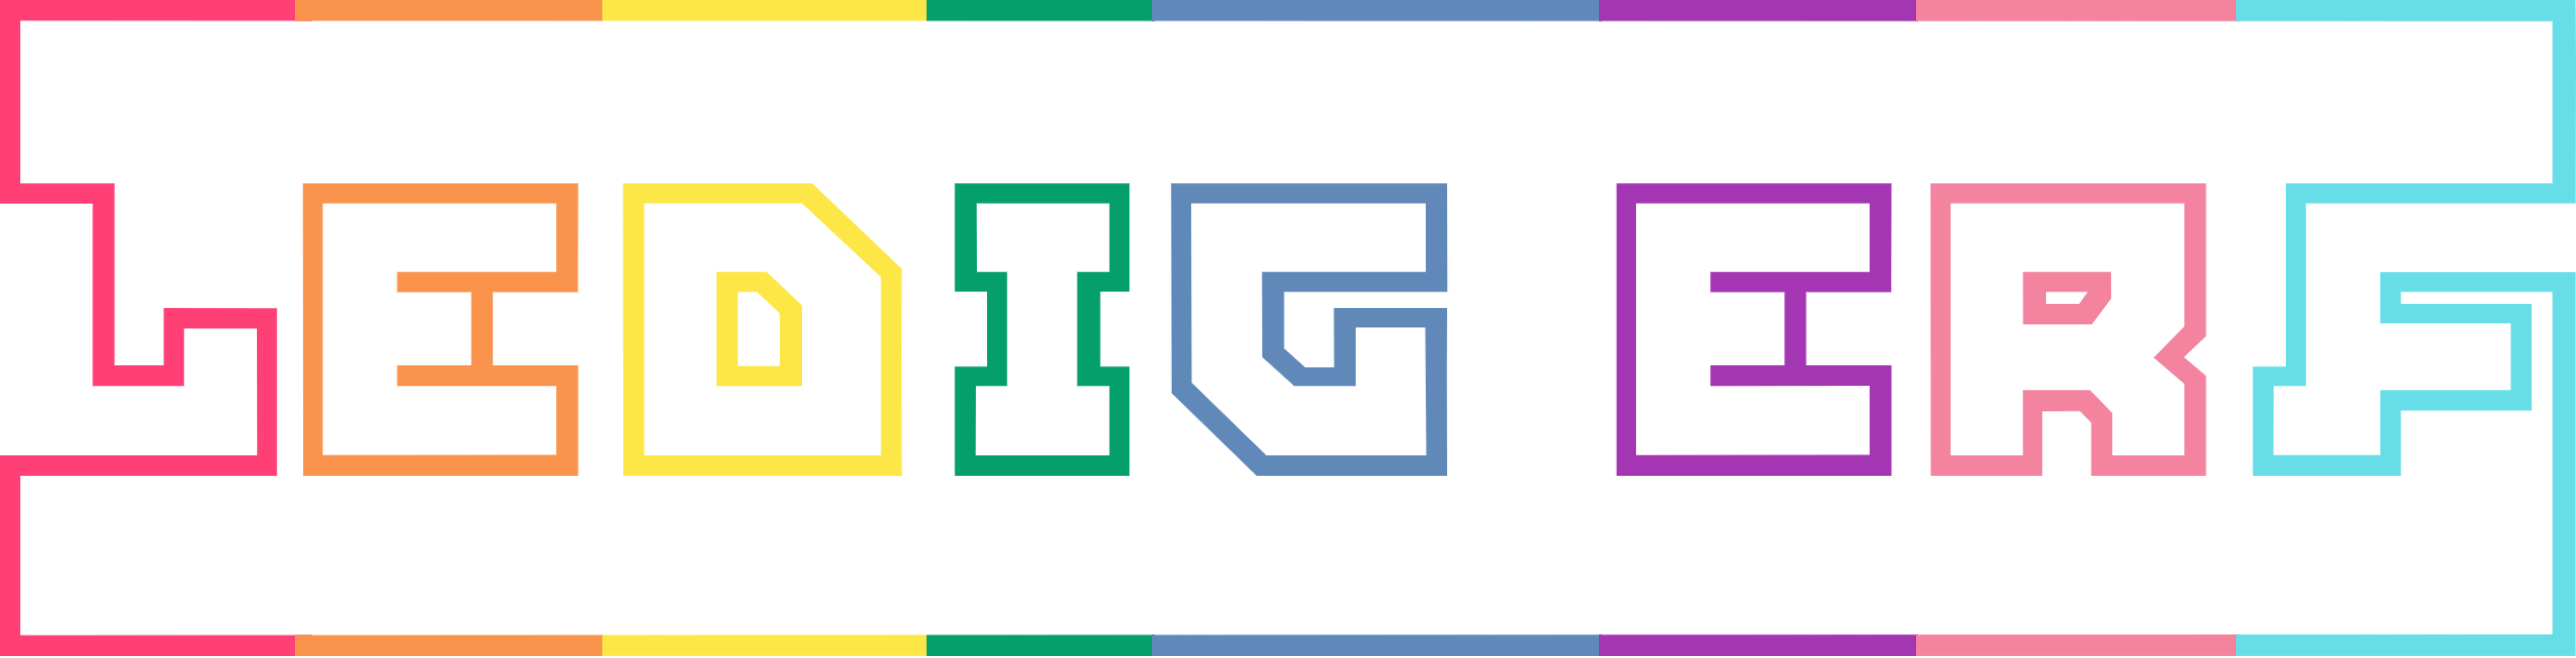 logo ledig regenboog_trans v2